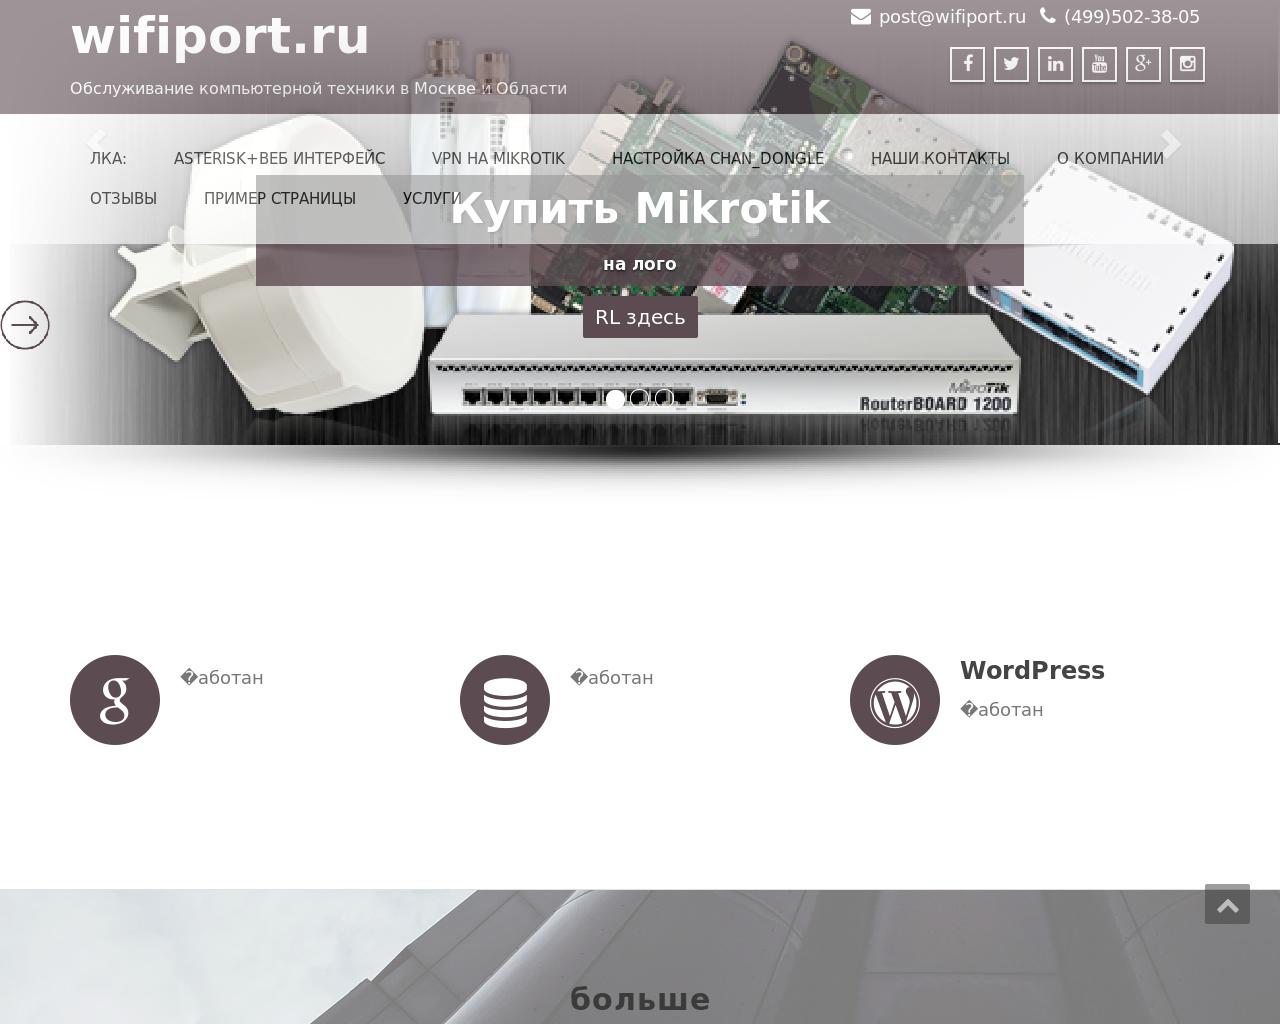 Изображение сайта wifiport.ru в разрешении 1280x1024